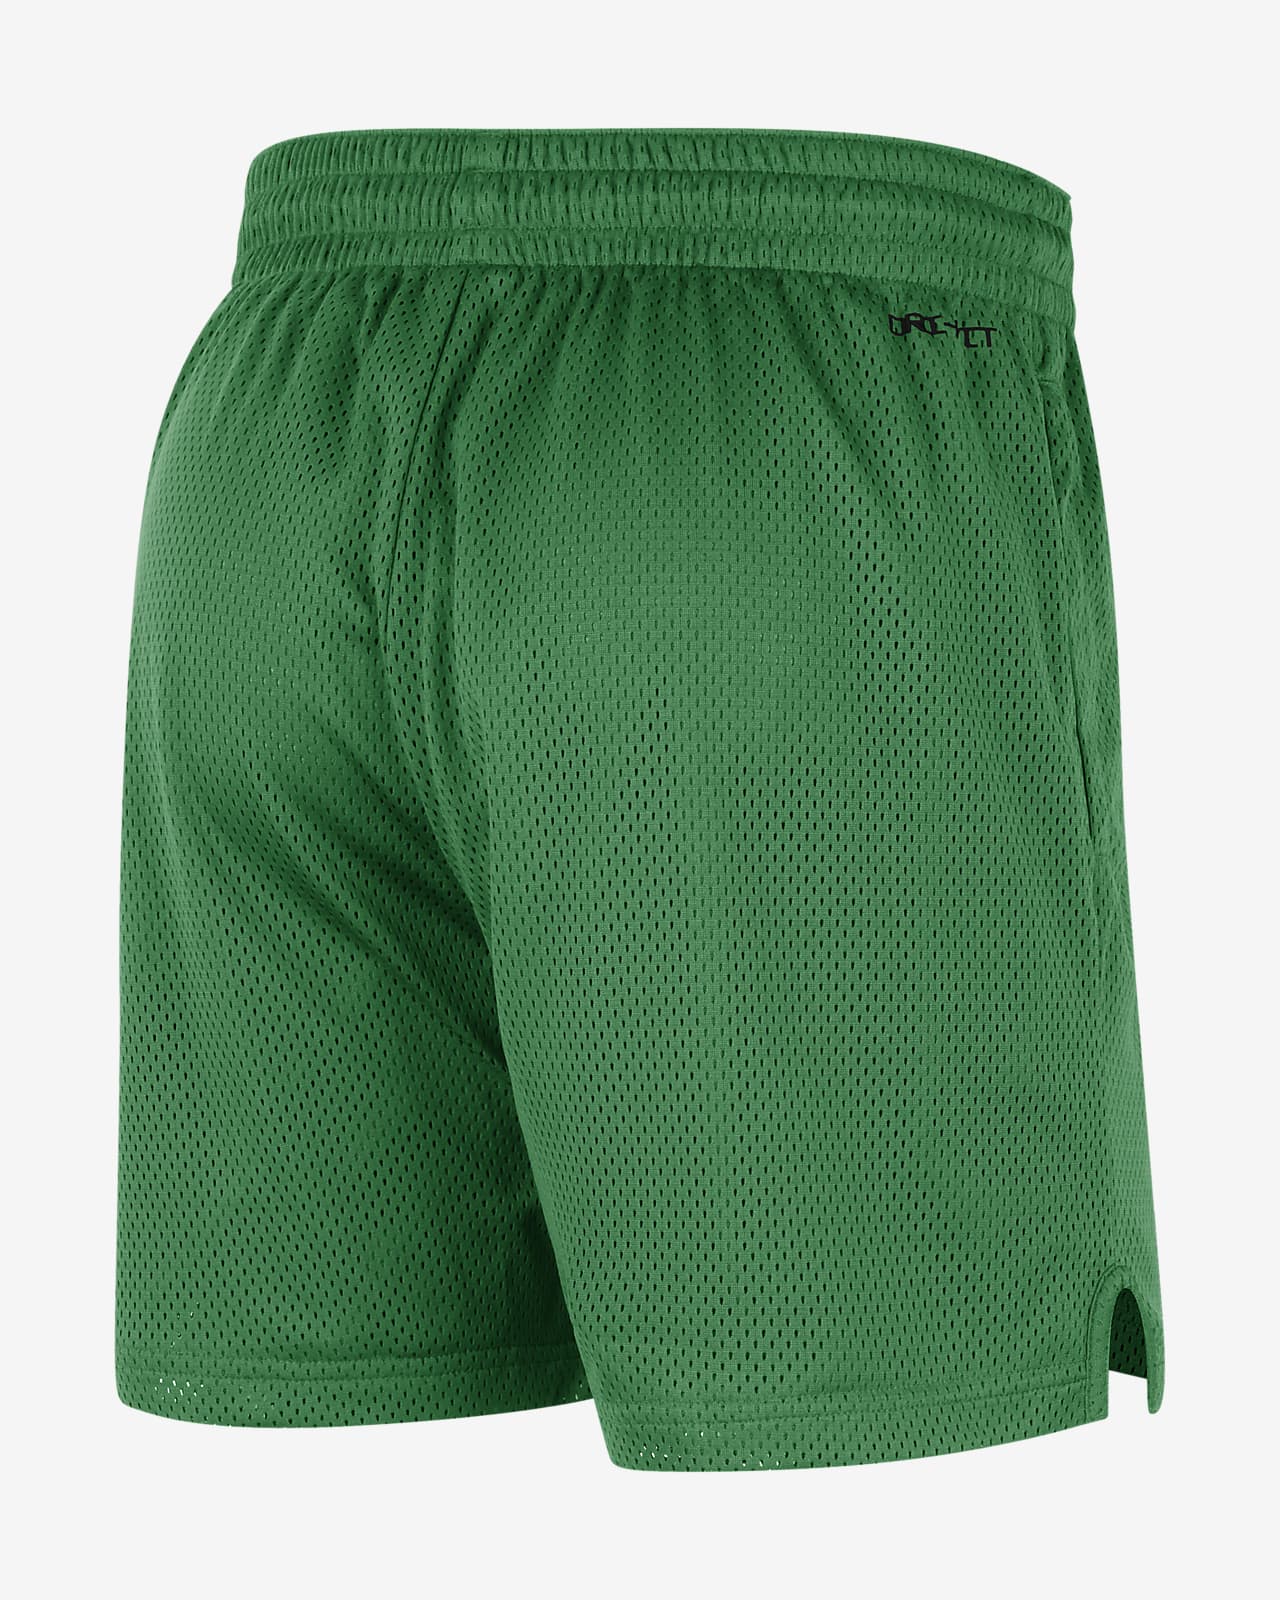 Oregon Men's Nike Dri-FIT College Knit Shorts.